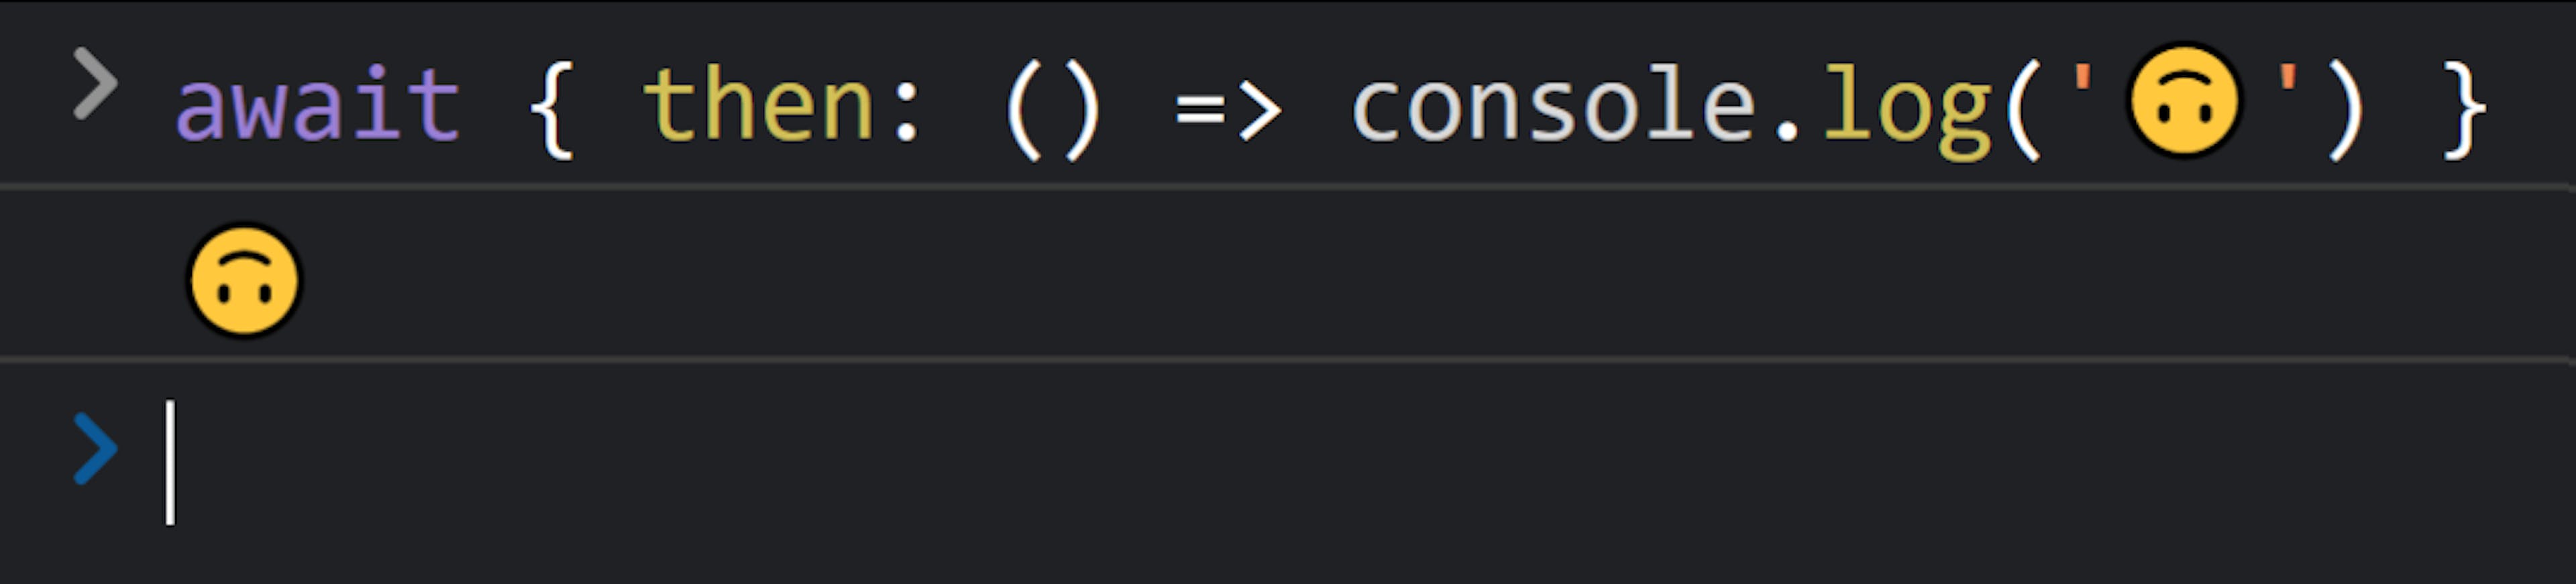 Console JavaScript com o texto "await { then: () => console.log('🙃') }" seguido por "🙃".